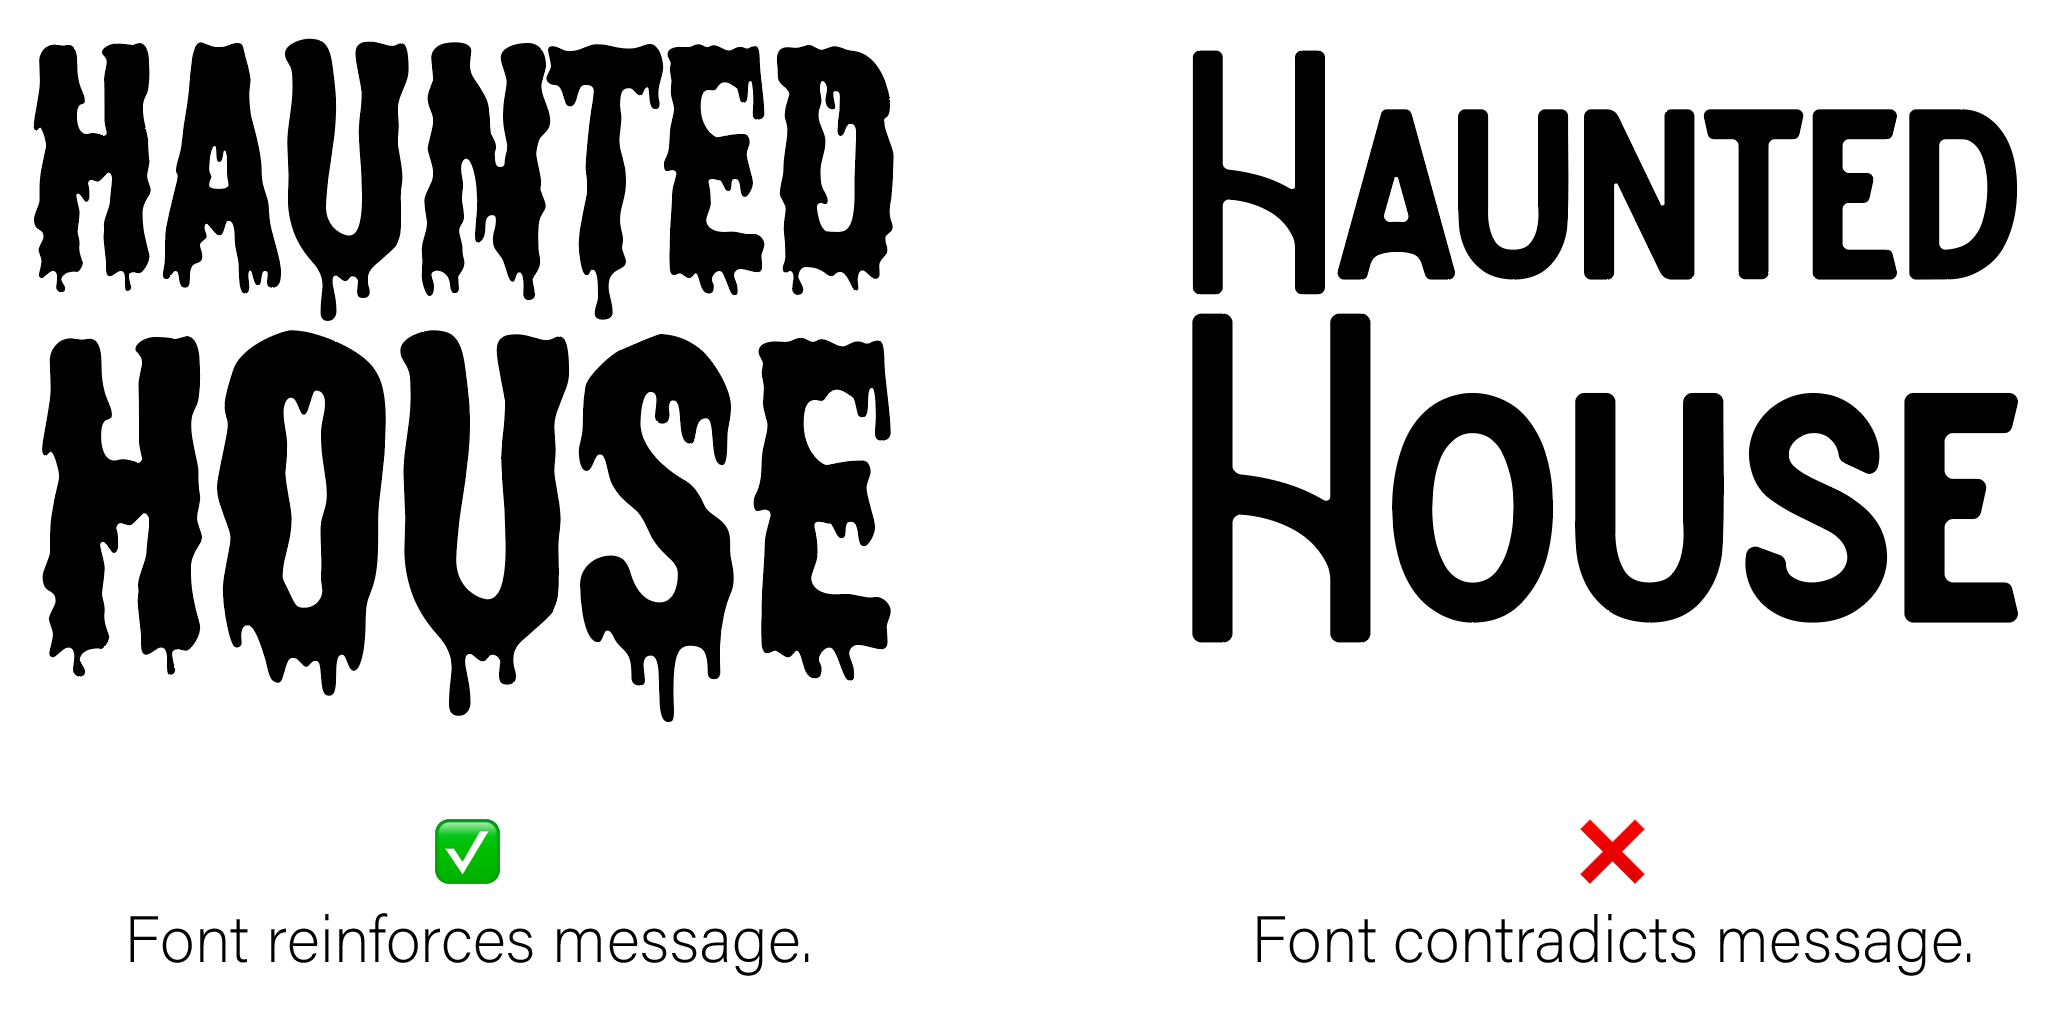 Comparison of fonts